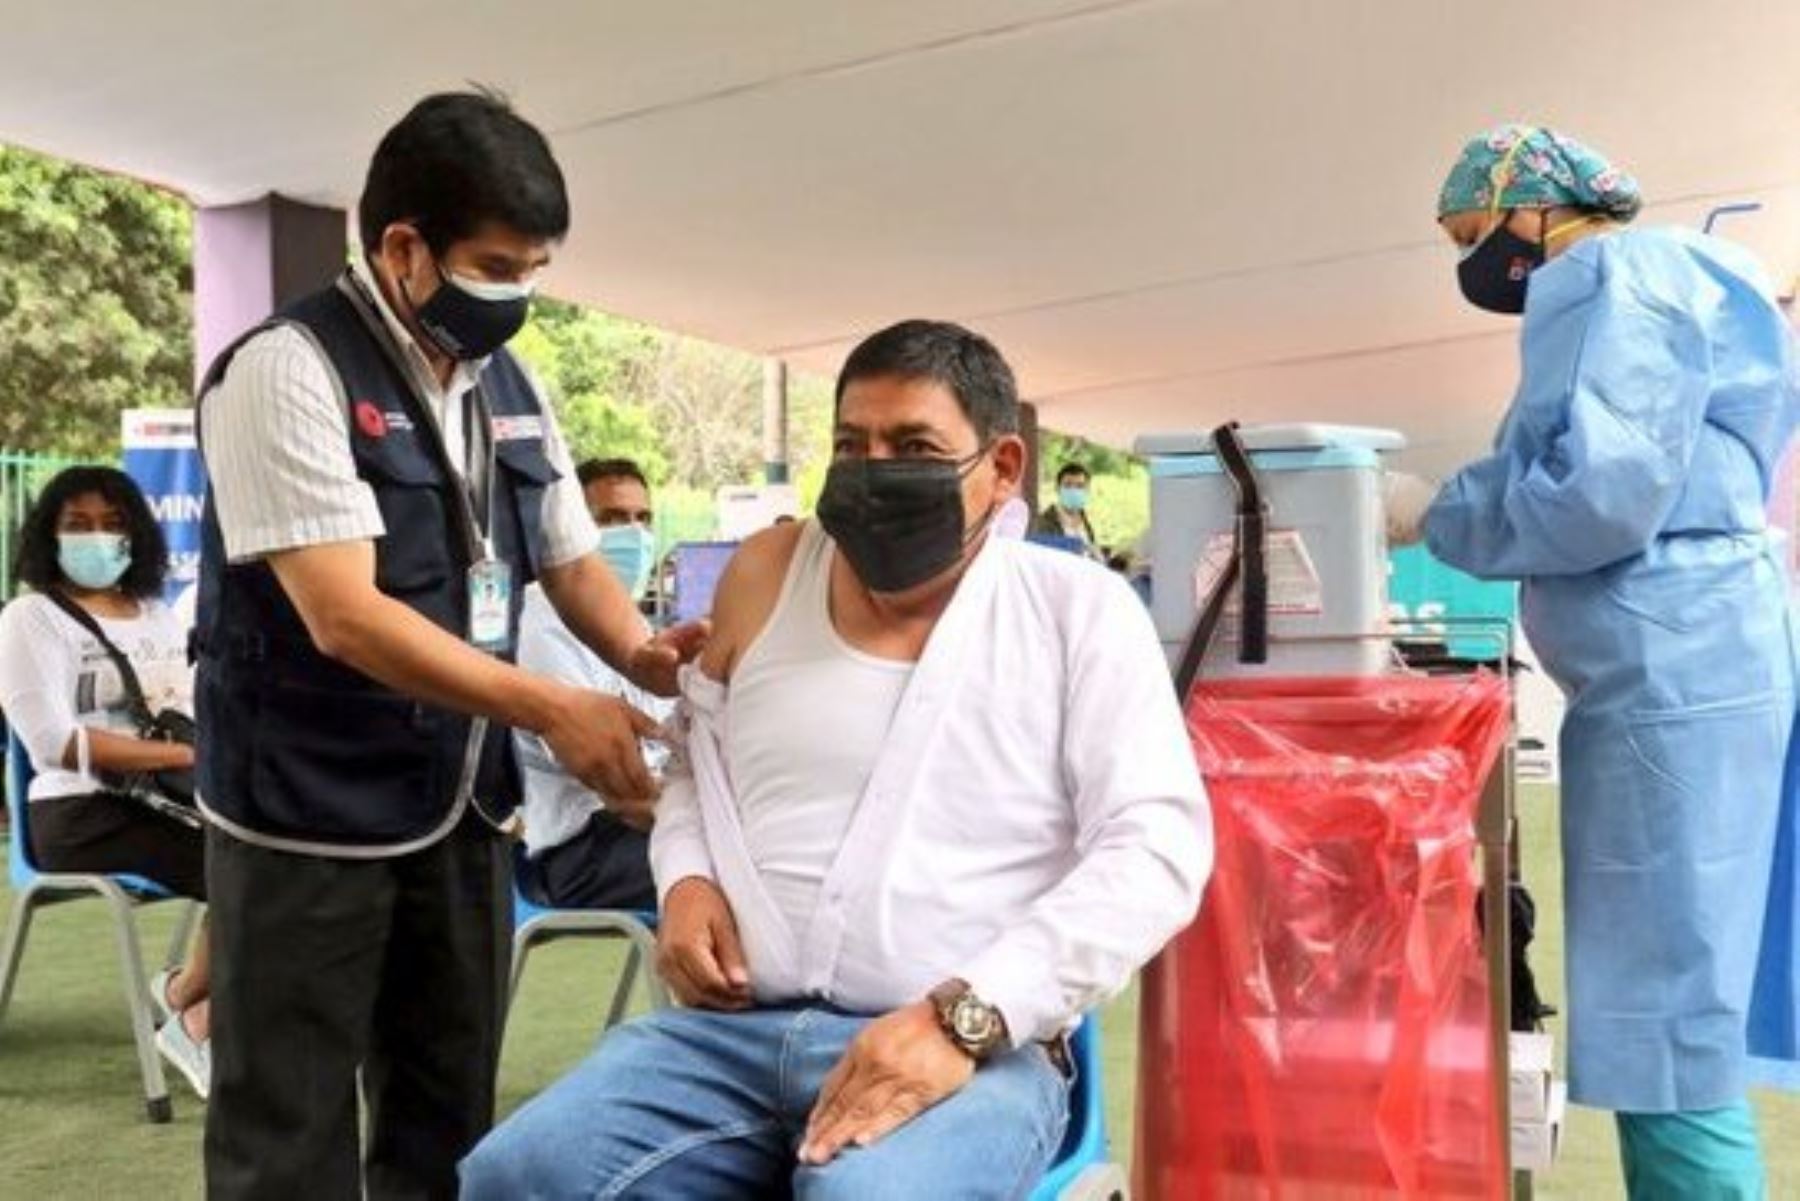 Ministro del Ambiente, Rubén Ramírez, dijo que vacunarse contra la covid-19 es un deber ciudadano y sanitario. Foto: ANDINA/Difusión.